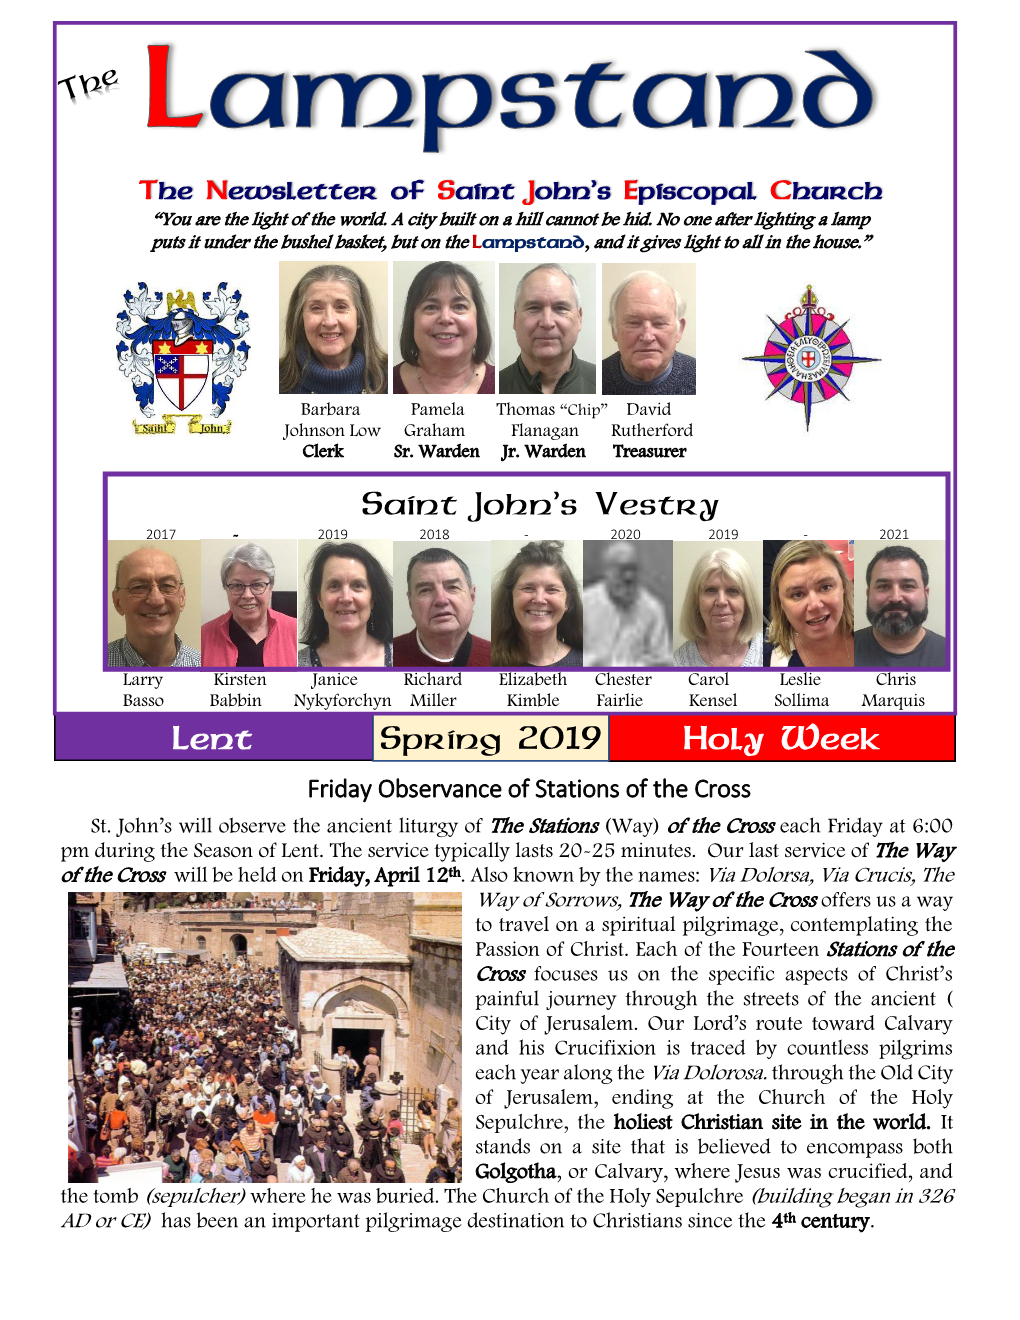 Saint John's Vestry Lent Spring 2019 Holy Week